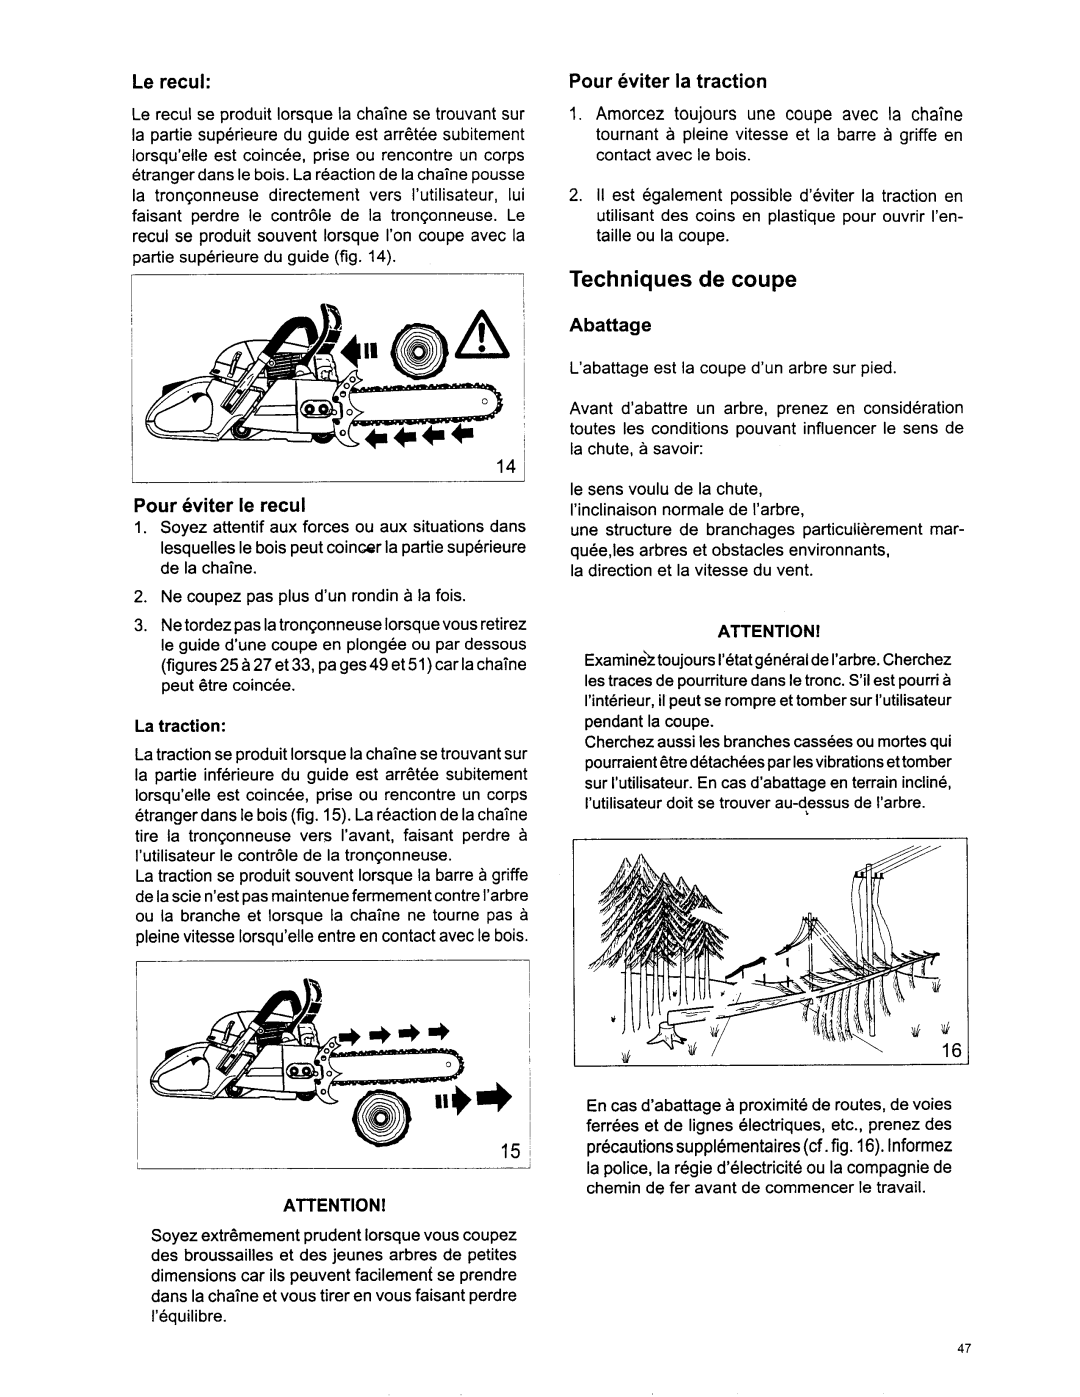 Makita DCS 7301 manual Techniques de coupe, Le recul, Pour eviter le recul, Pour eviter la traction, Abattage, La traction 